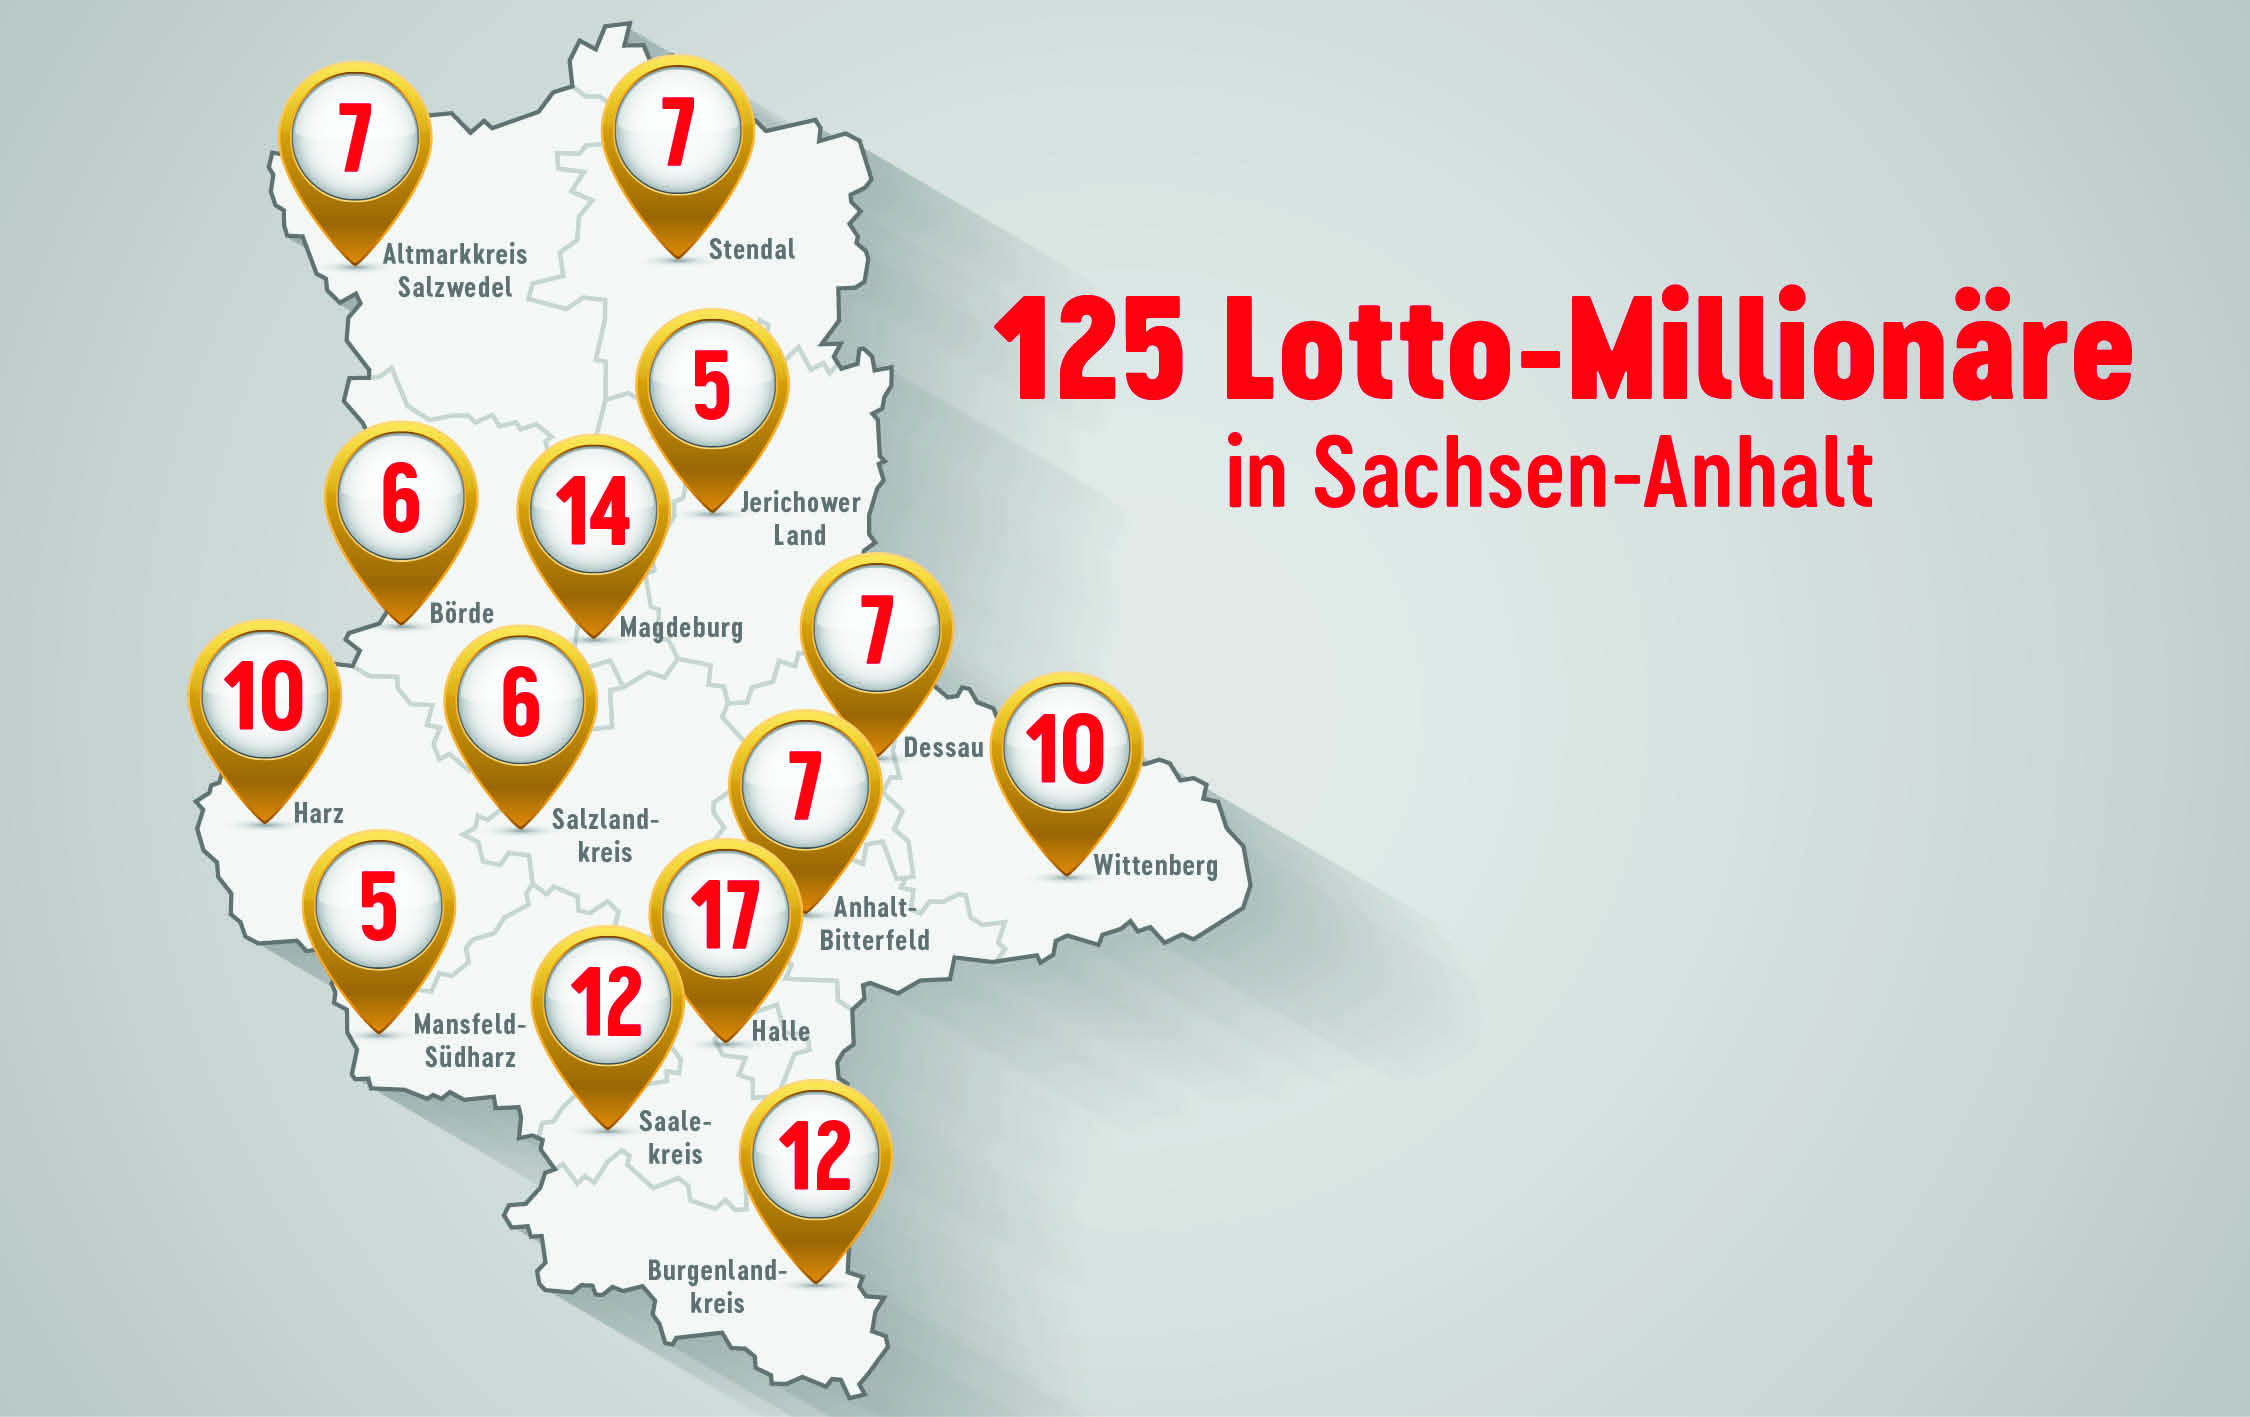 Lotto-Millionäre in Sachsen-Anhalt